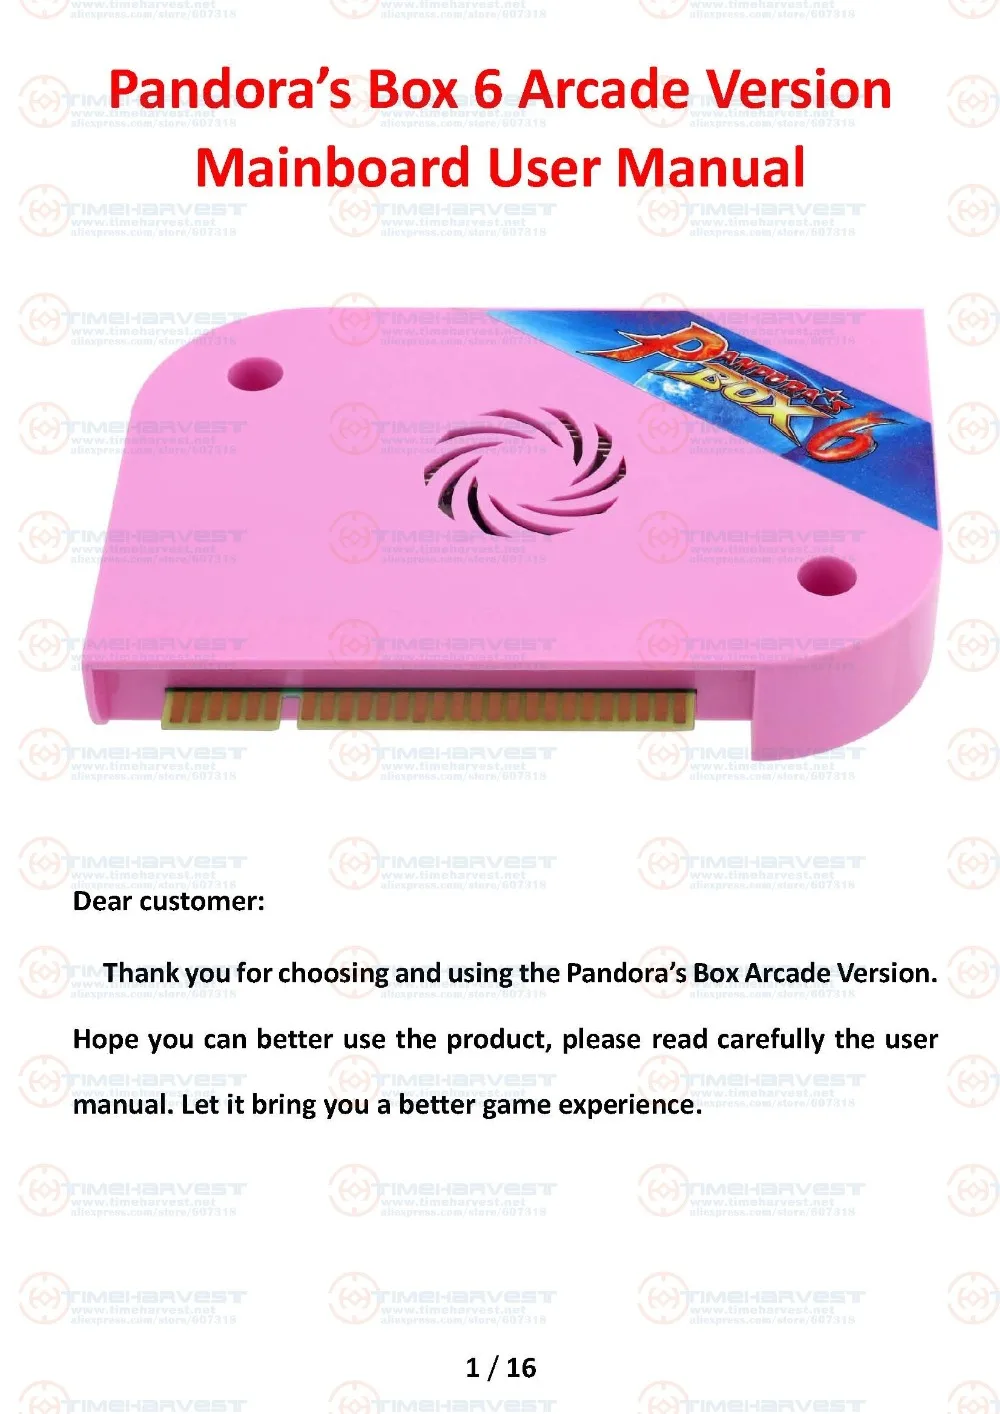 Новое поступление оригинальный Pandora Box 6 JAMMA версия 1300 в 1 игры доска семья версия для игры Джойстик Аркада Marchine кабинет